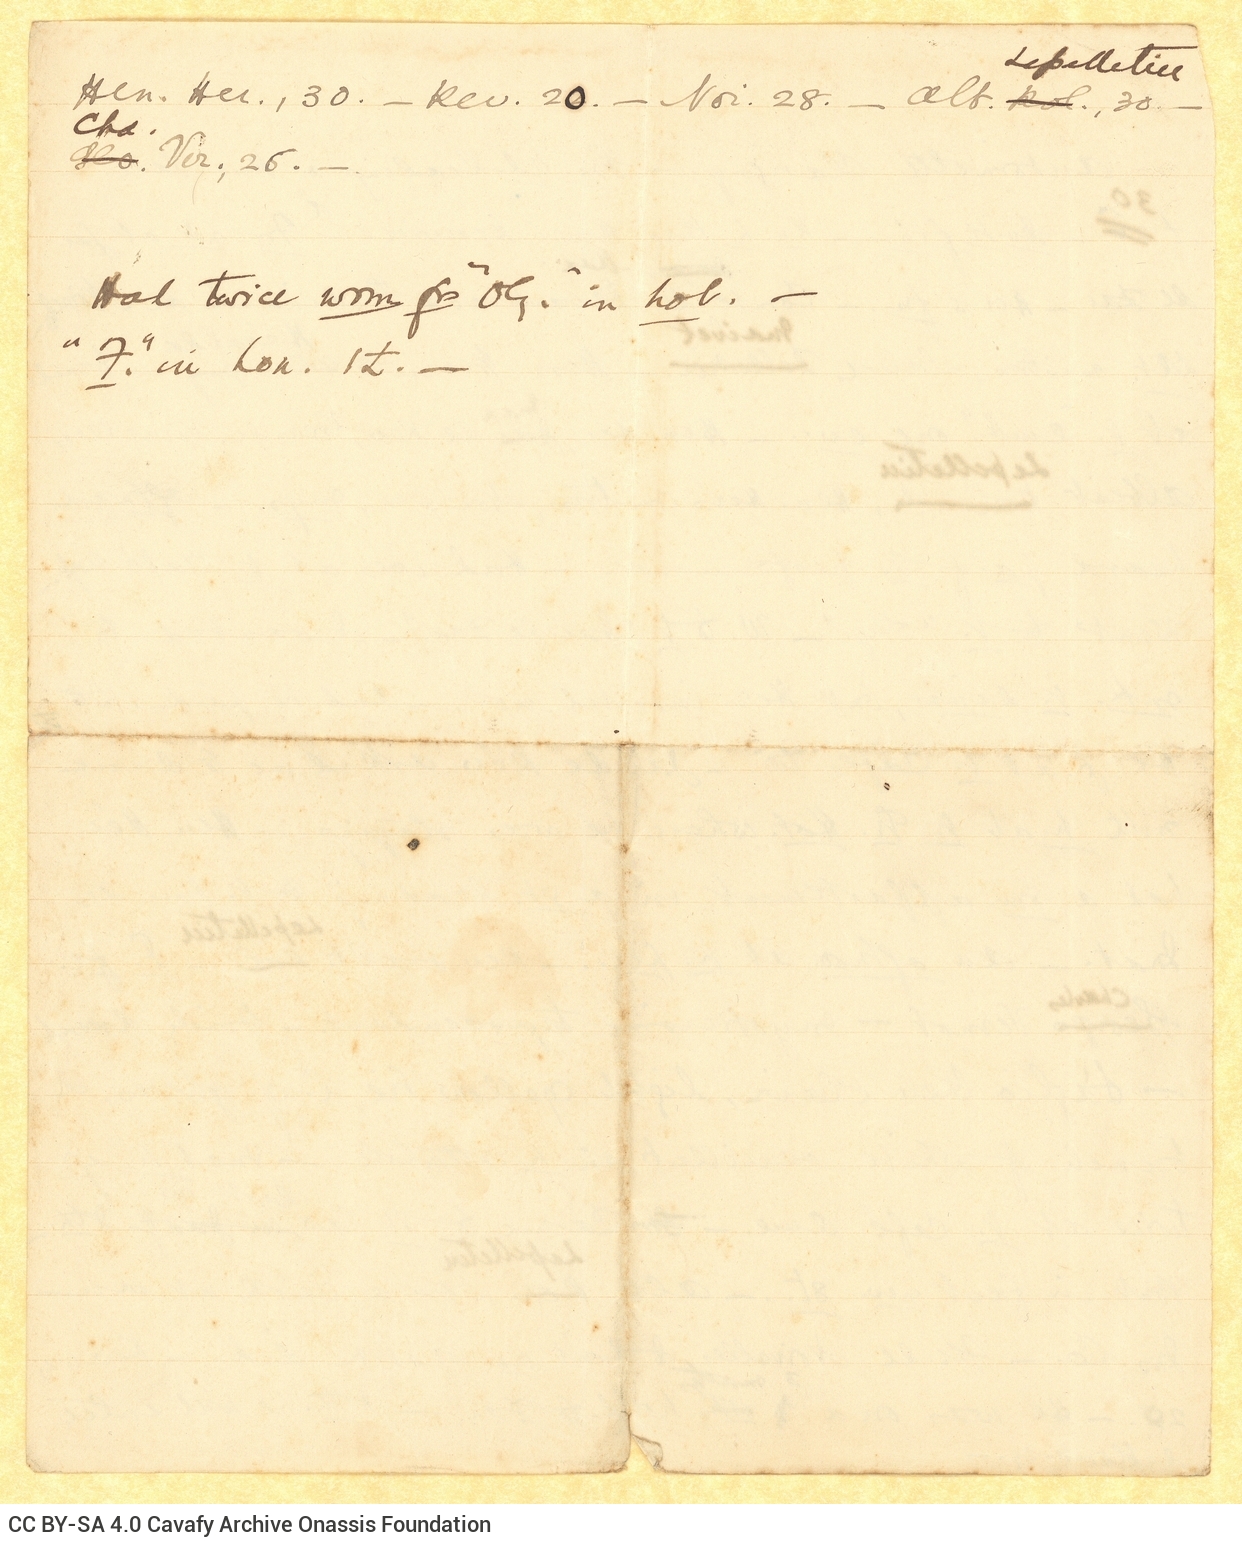 Χειρόγραφο κείμενο του Καβάφη στις δύο όψεις φύλλου. Γίνεται χρήση